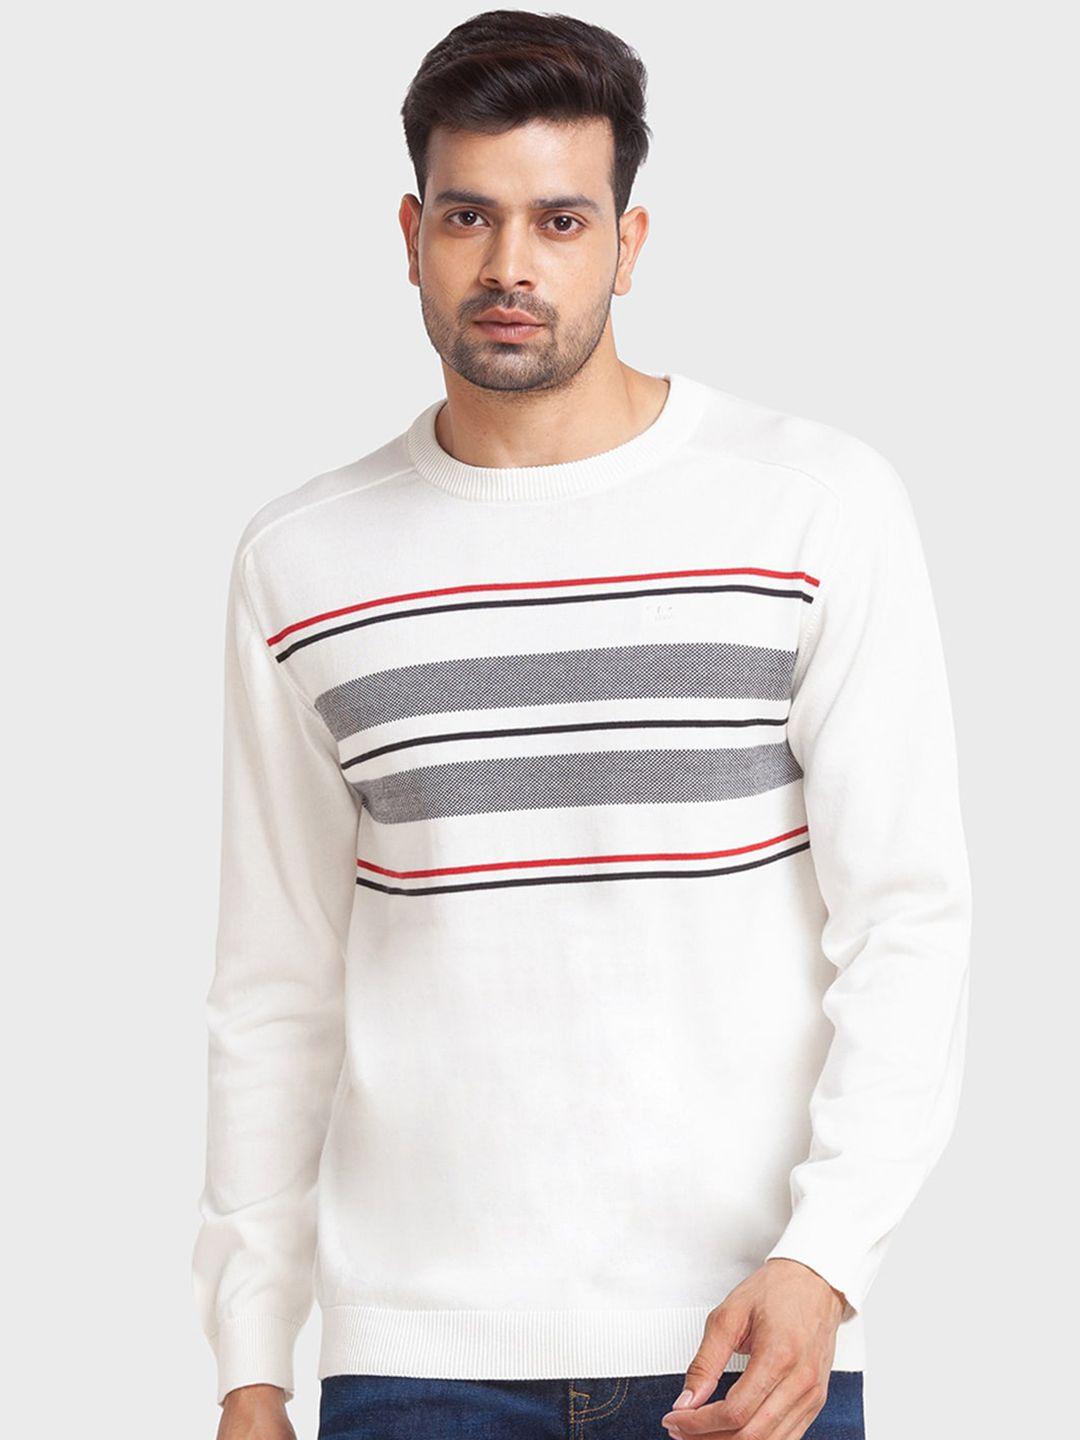 colorplus-men-striped-cotton-pullover